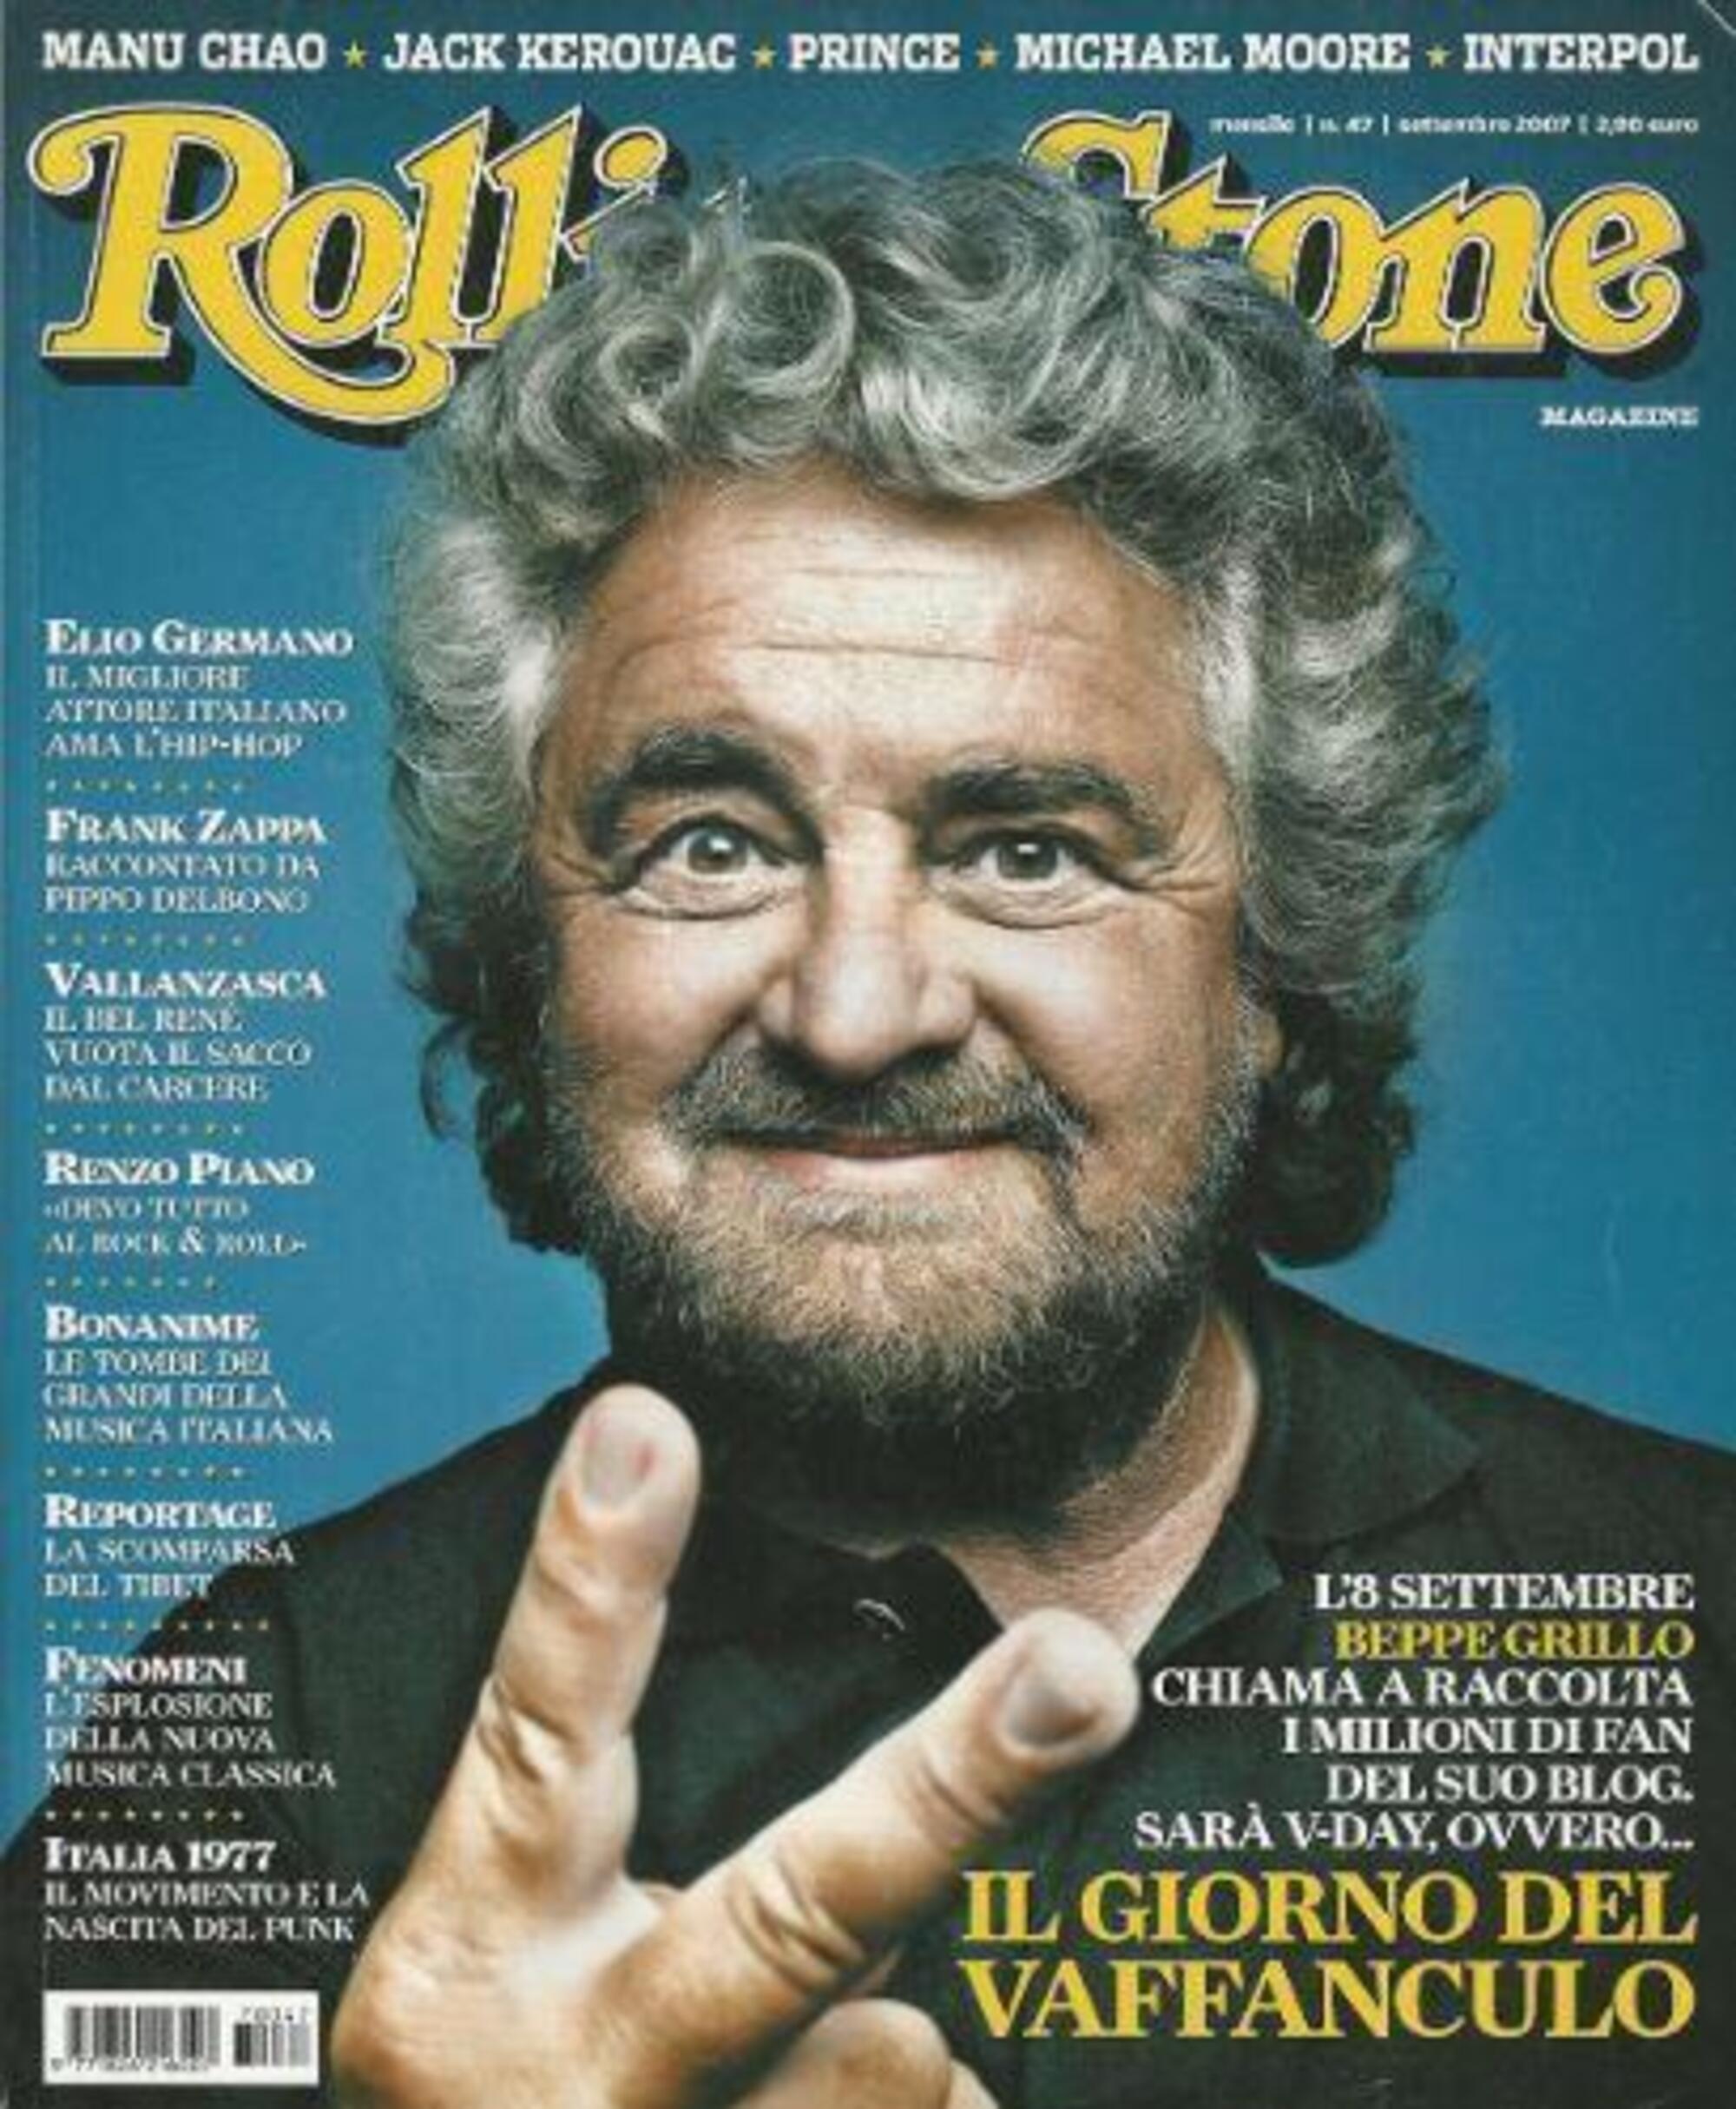 Beppe Grillo sulla cover di Rolling Stone nel 2007